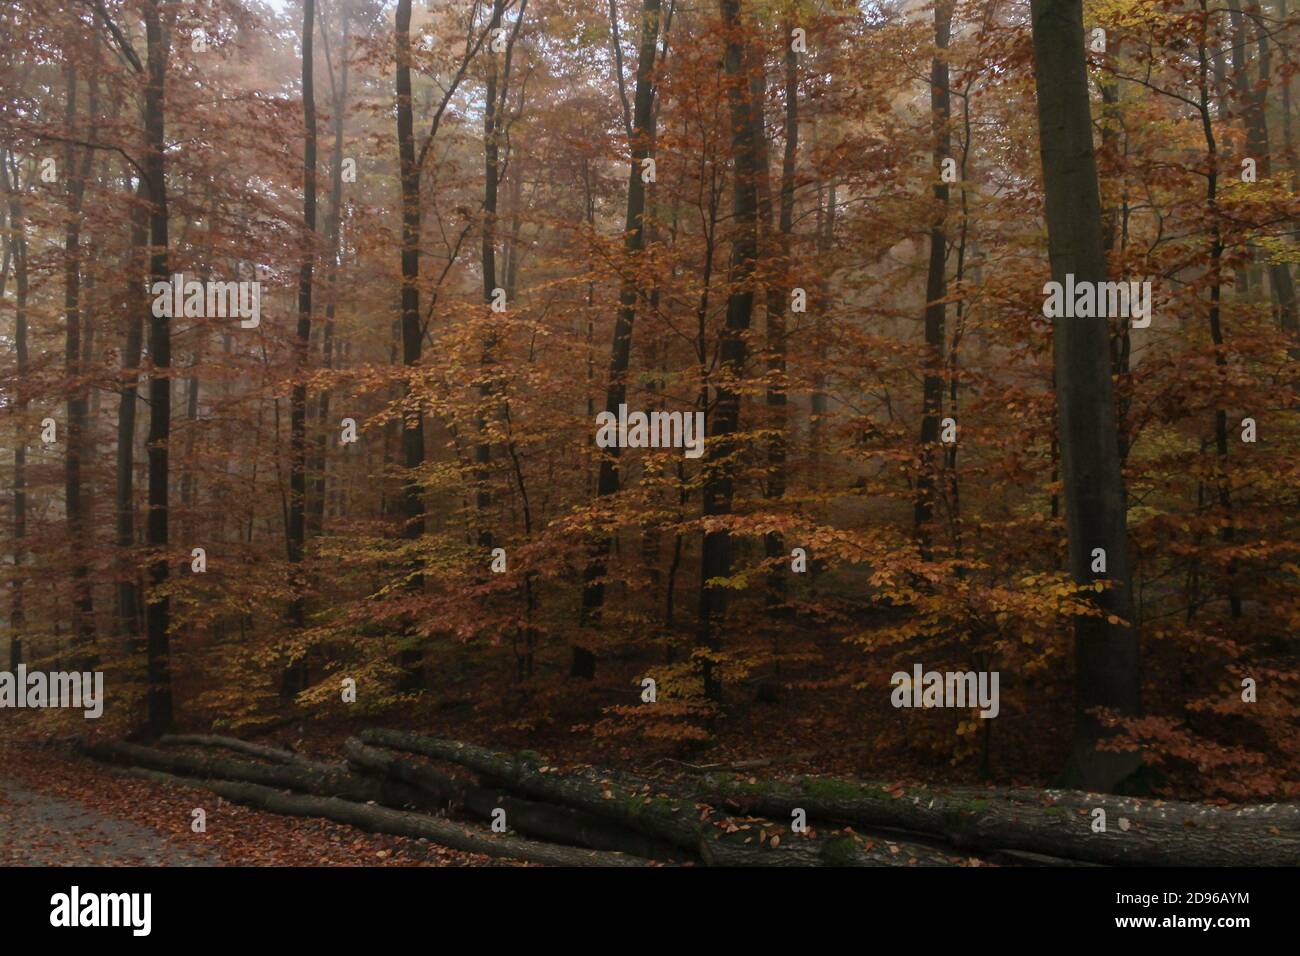 Forêt d'automne avec de hauts arbres, feuilles jaunes et rouges, et bois coupé dans la route. Concept de protection et d'entretien de la forêt.piles de bois dans des forts étonnants Banque D'Images